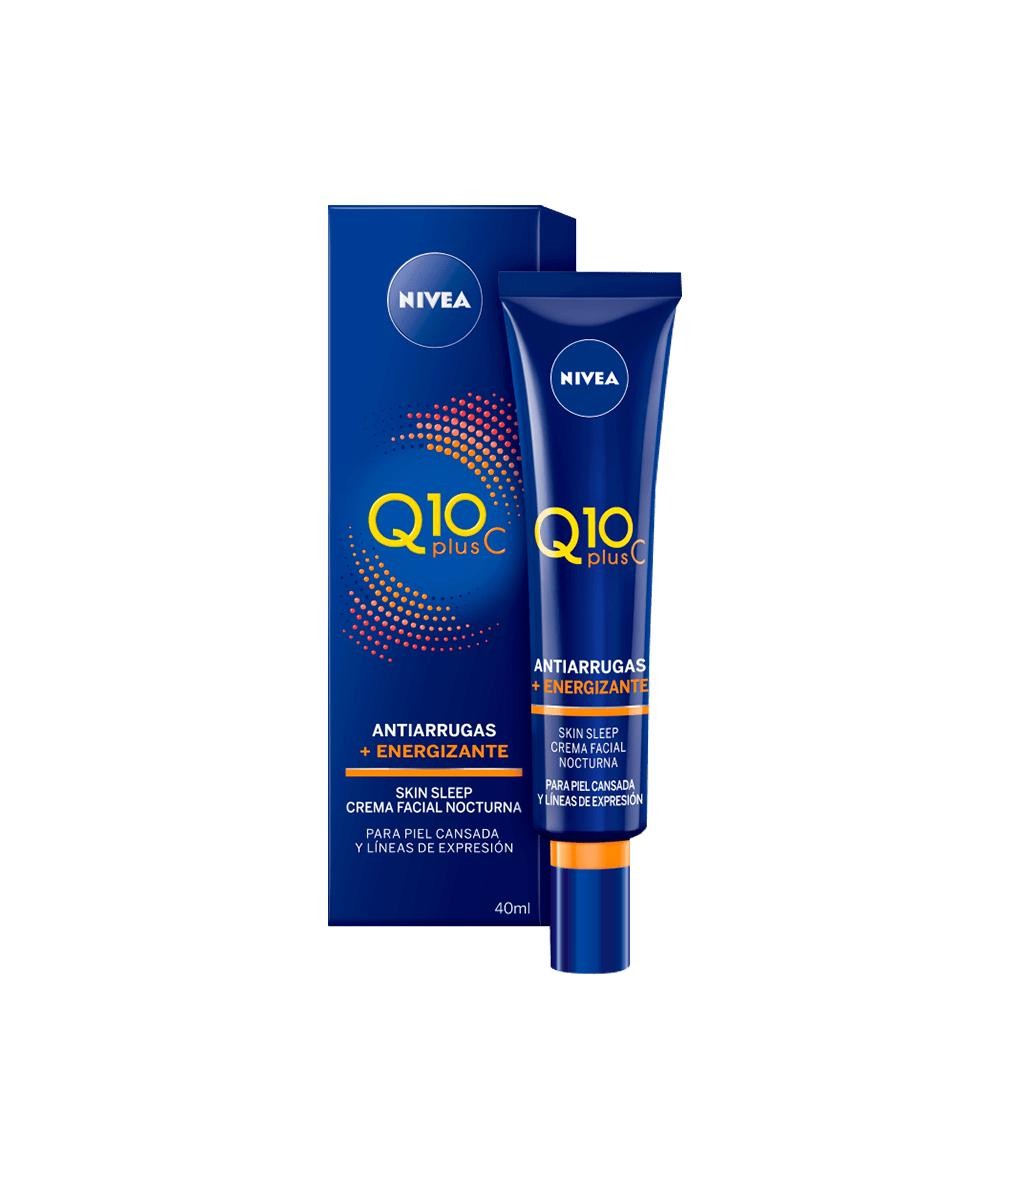 NIVEA Q10 Plus C Antiarrugas + Energizante Crema da notte Viso 40 ml